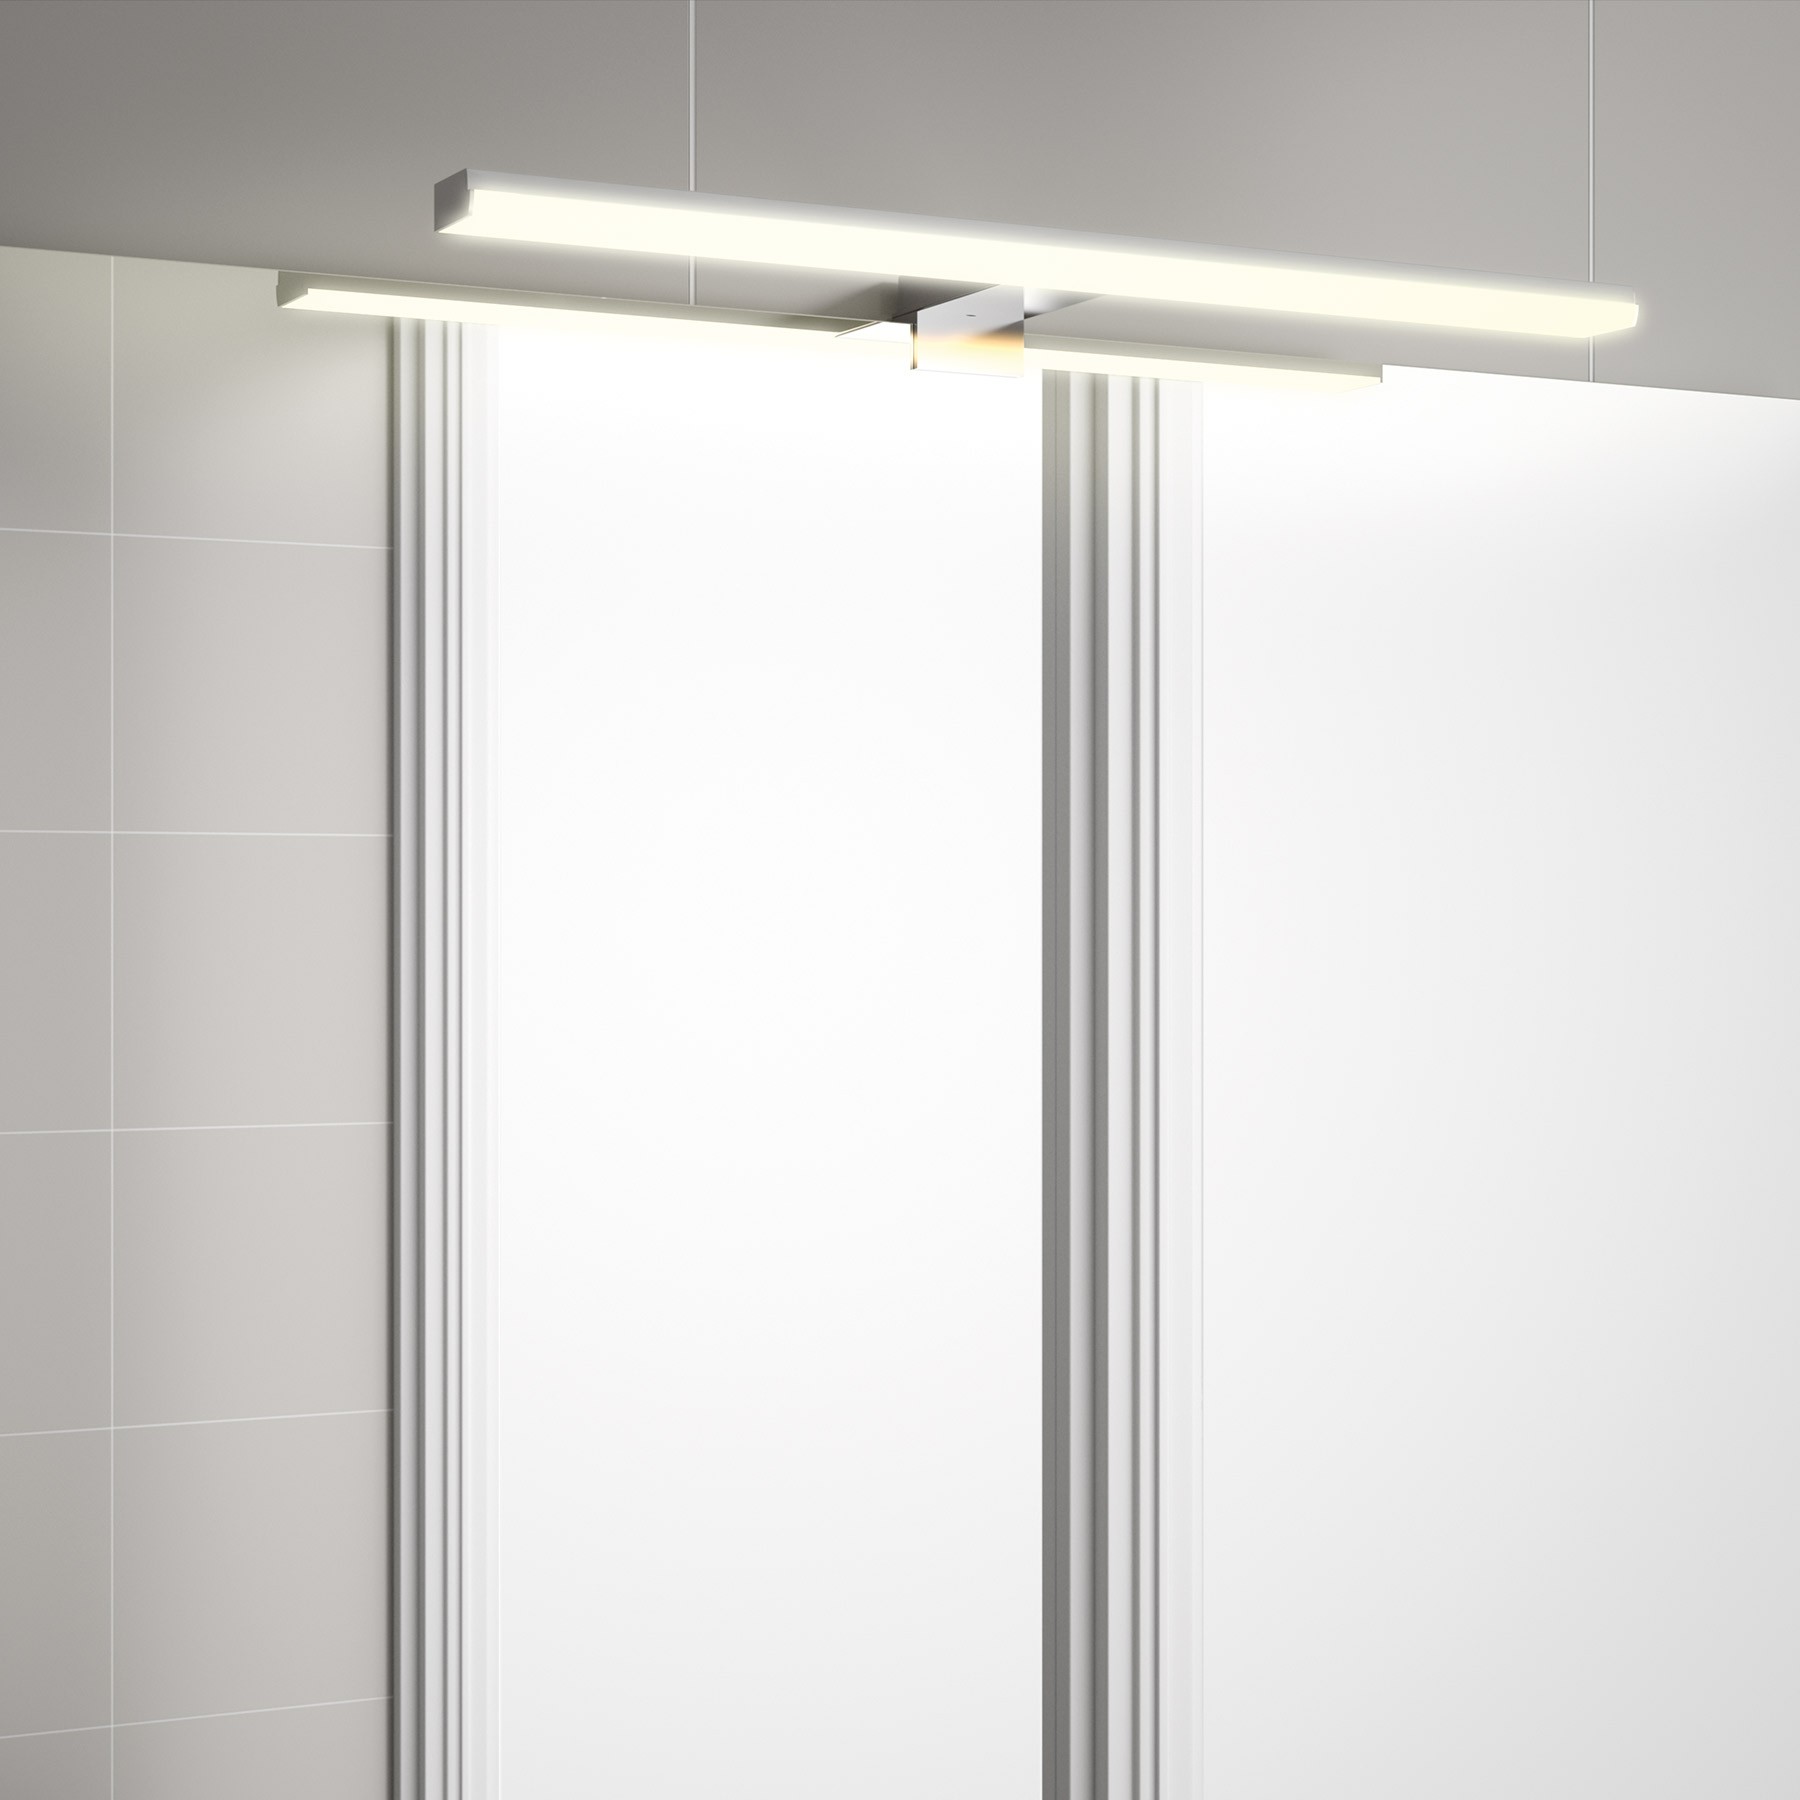 Applique de salle de bains Gamme PRO SALGAR PANDORA 308 luminaire led IP44 8W.-4000k 308 x 96 x 32 mm - Réf:26784